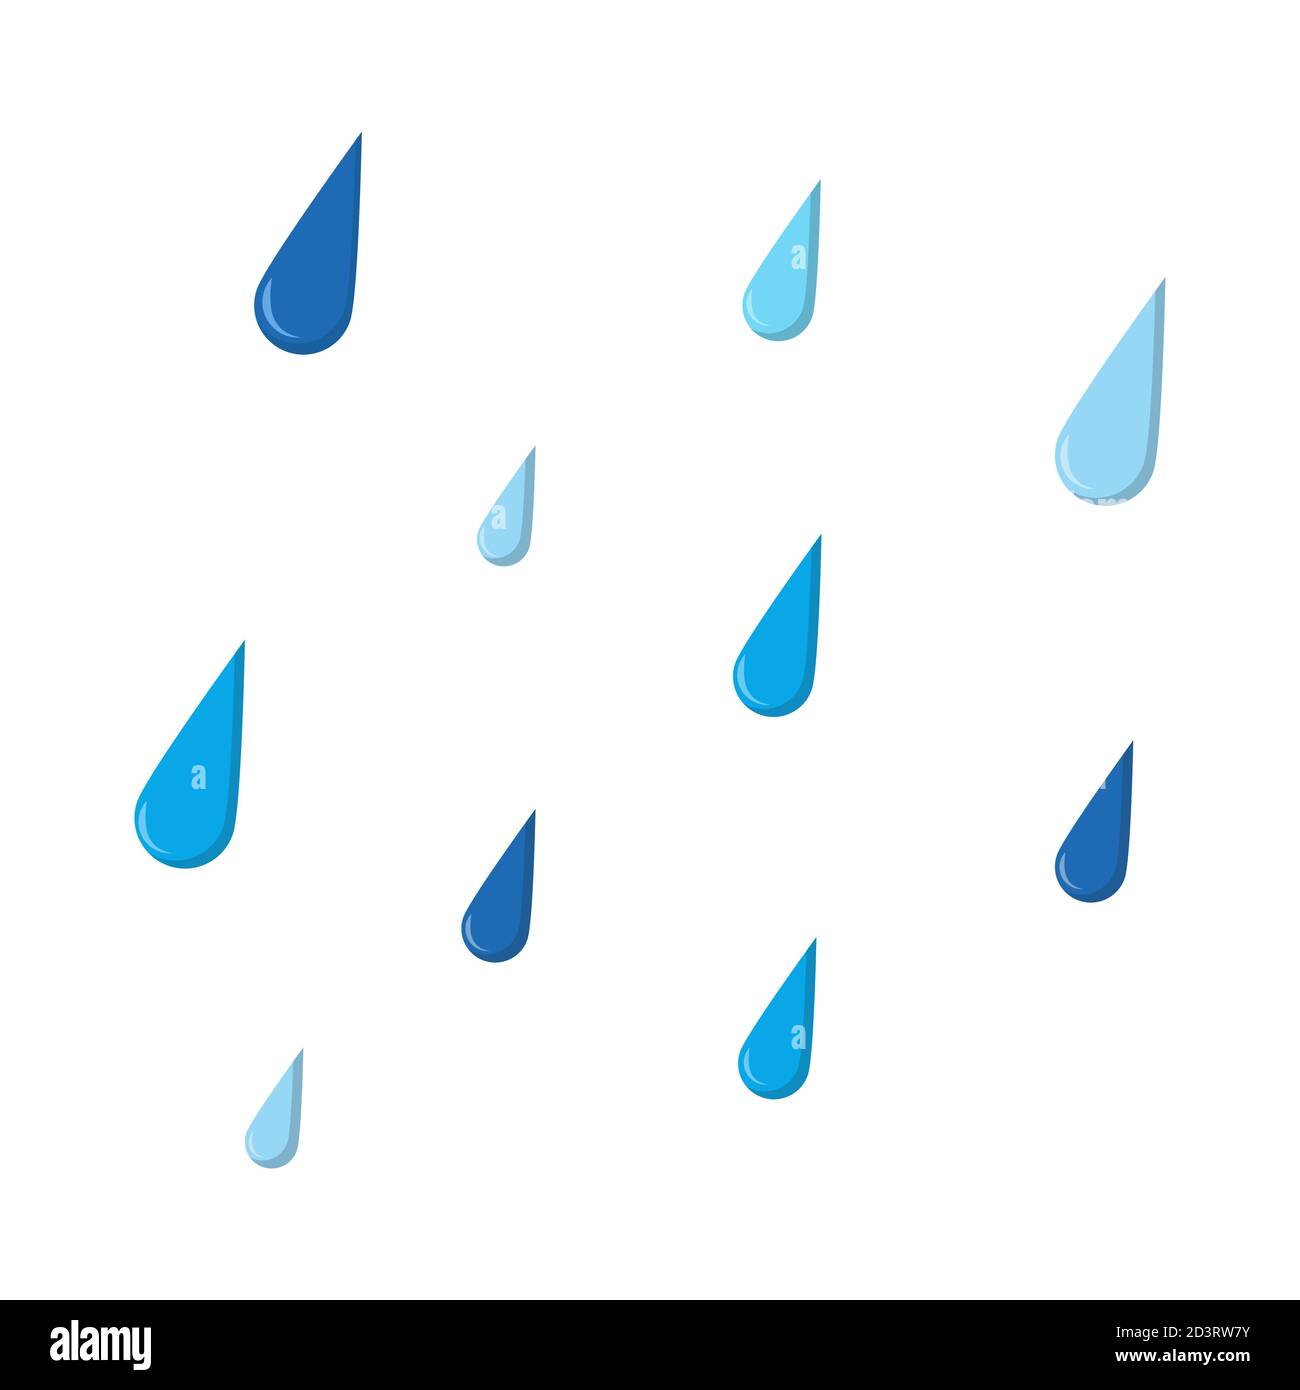 Immagine cartone animato pioggia isolato su bianco. Gocce d'acqua blu che cadono. Ritaglio modello raindrop. Eps10 vettoriale con gocce di pioggia autunnale. Autunnale w Illustrazione Vettoriale